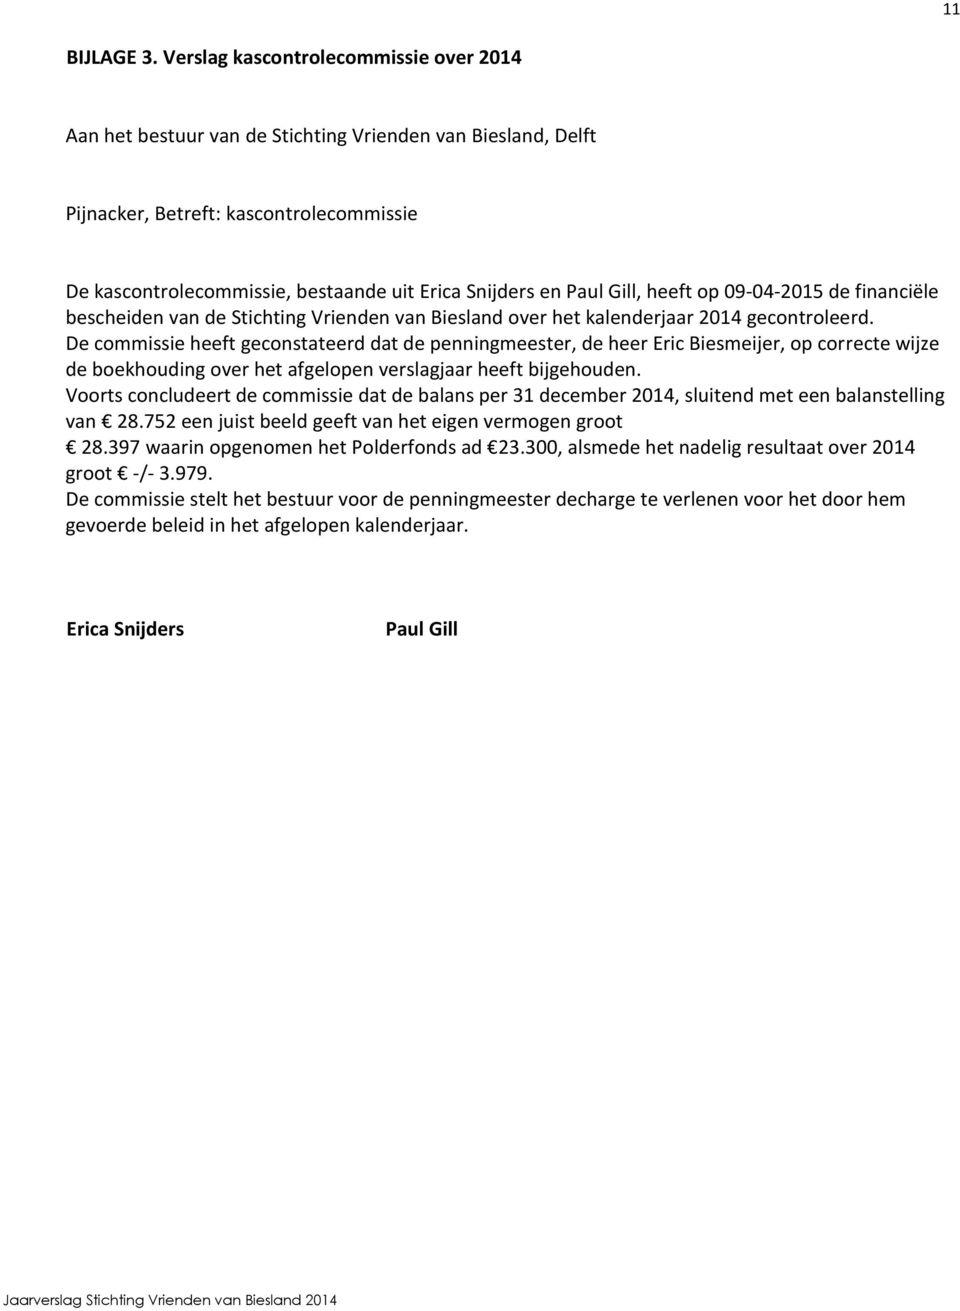 Paul Gill, heeft op 09-04-2015 de financiële bescheiden van de Stichting Vrienden van Biesland over het kalenderjaar 2014 gecontroleerd.